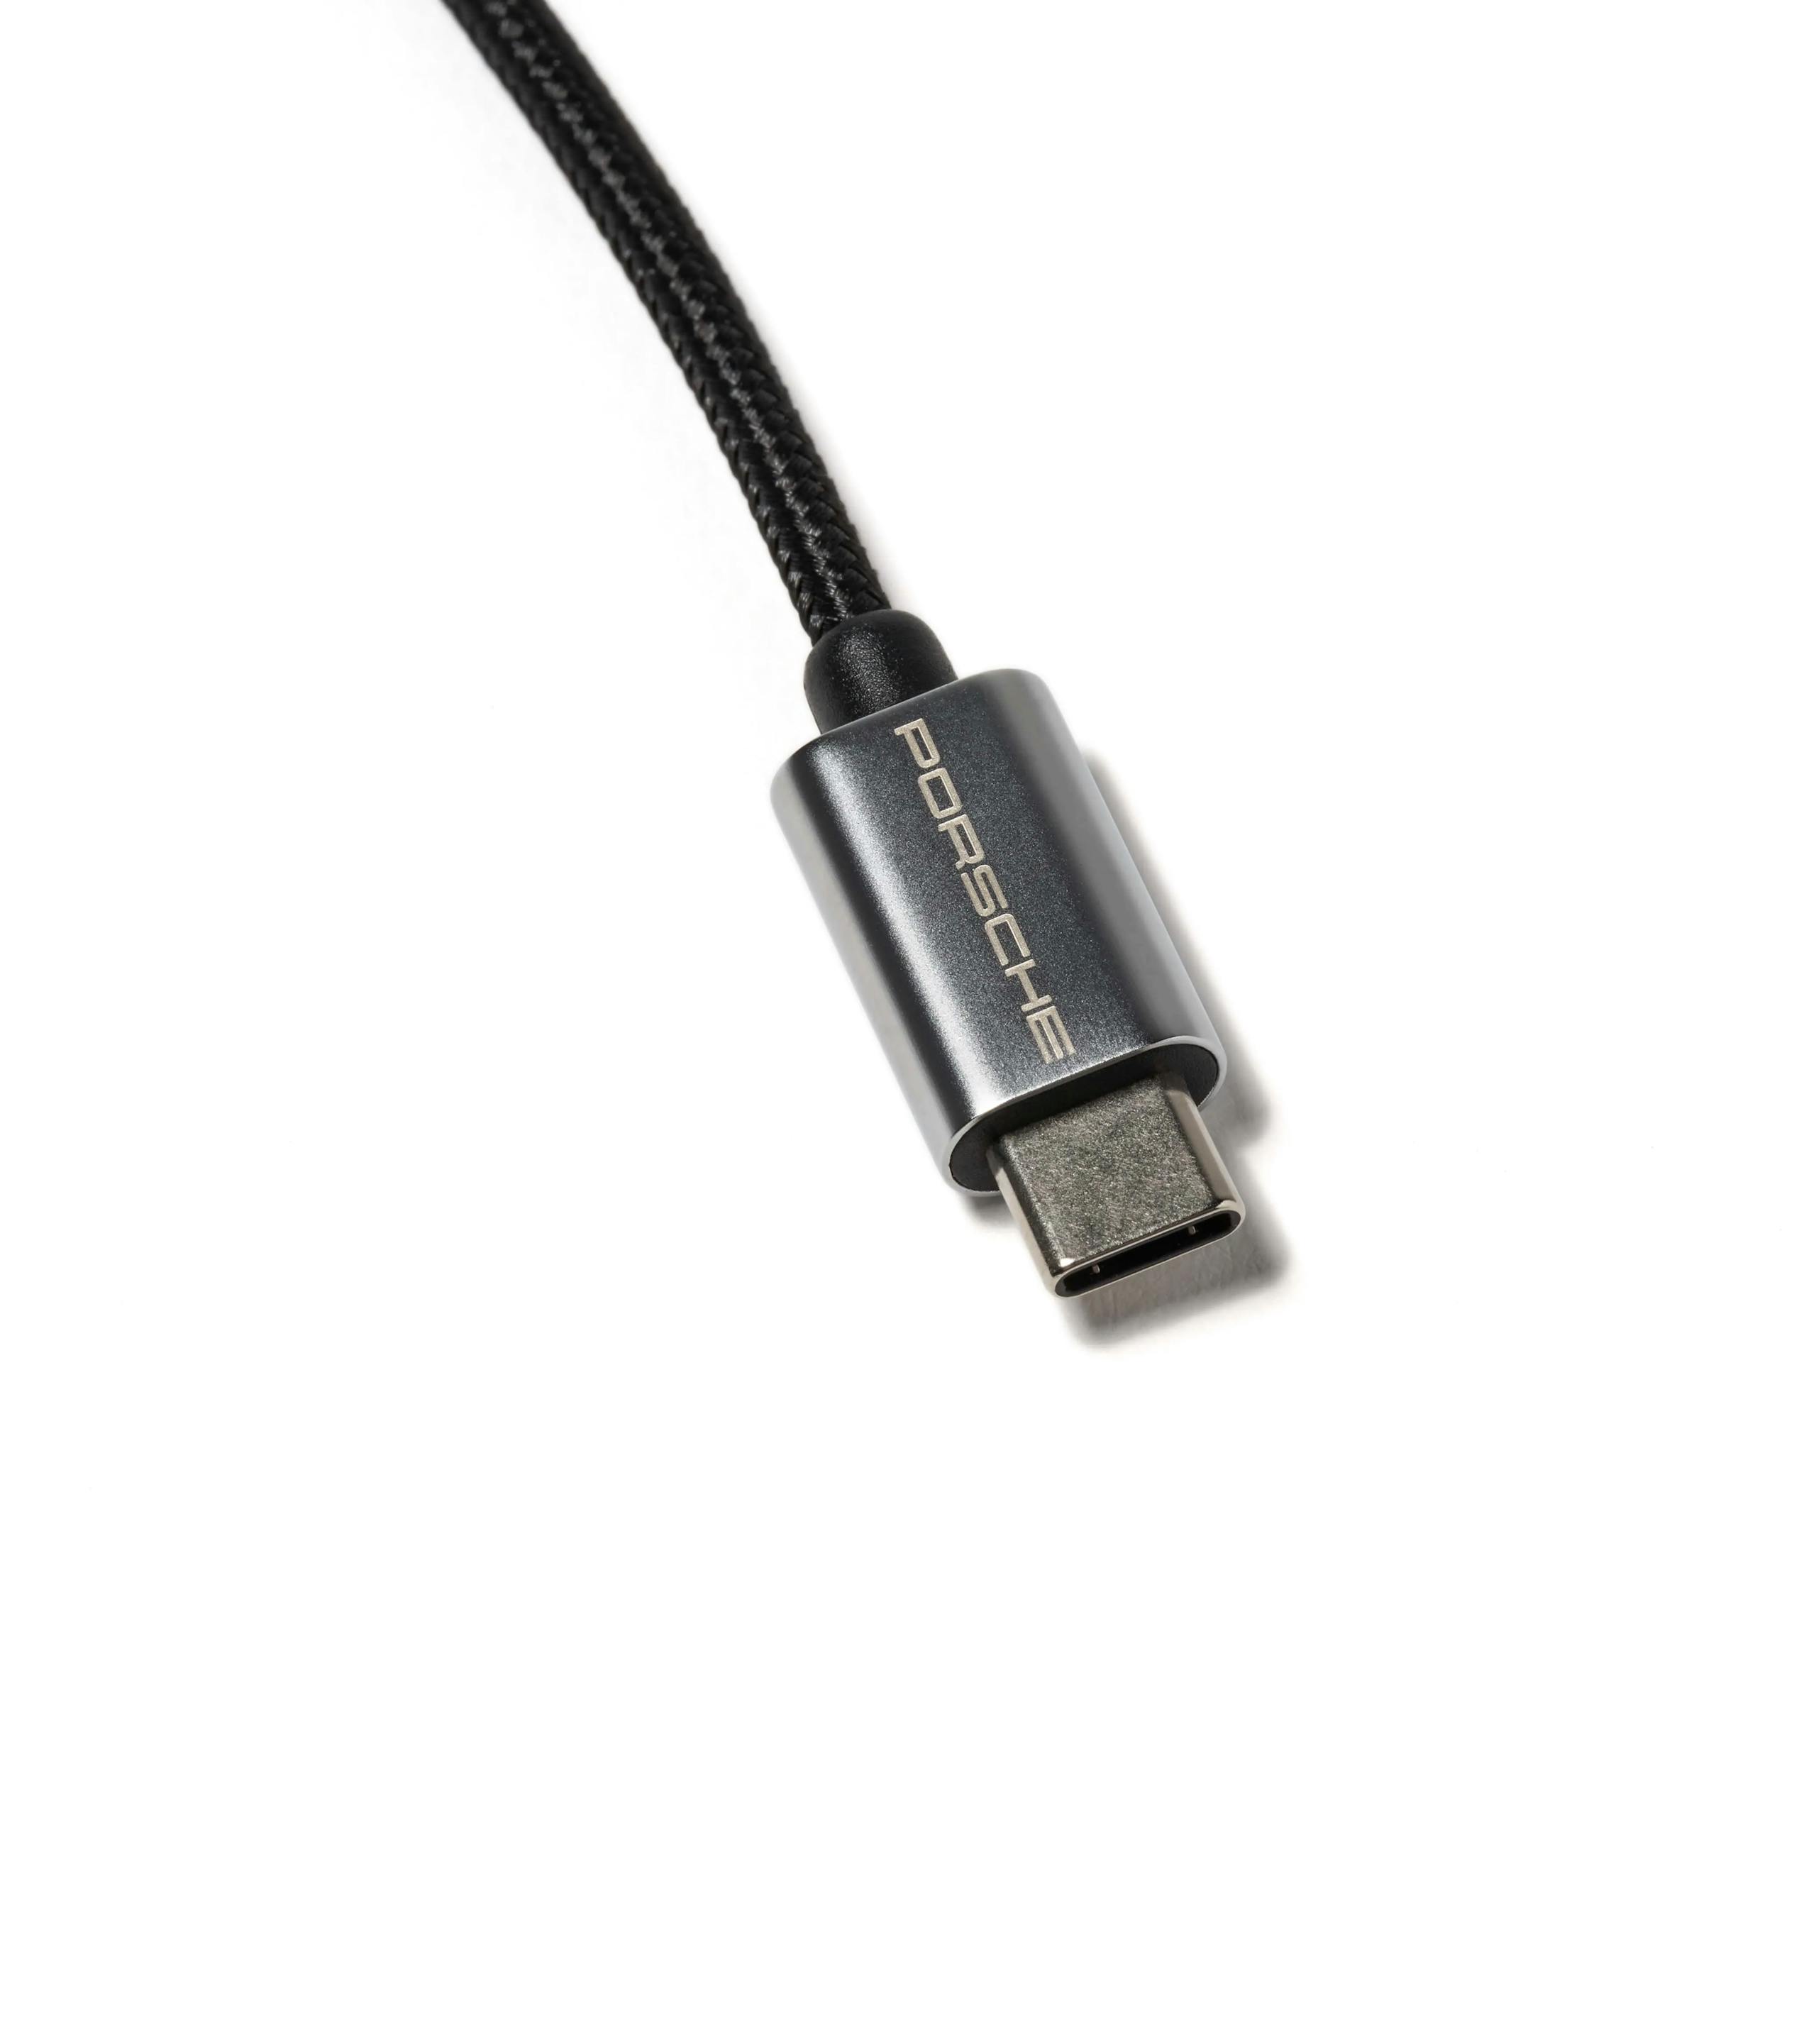 Cable de carga USB Type-C™ para smartphone con conexión Apple Lightning® 3